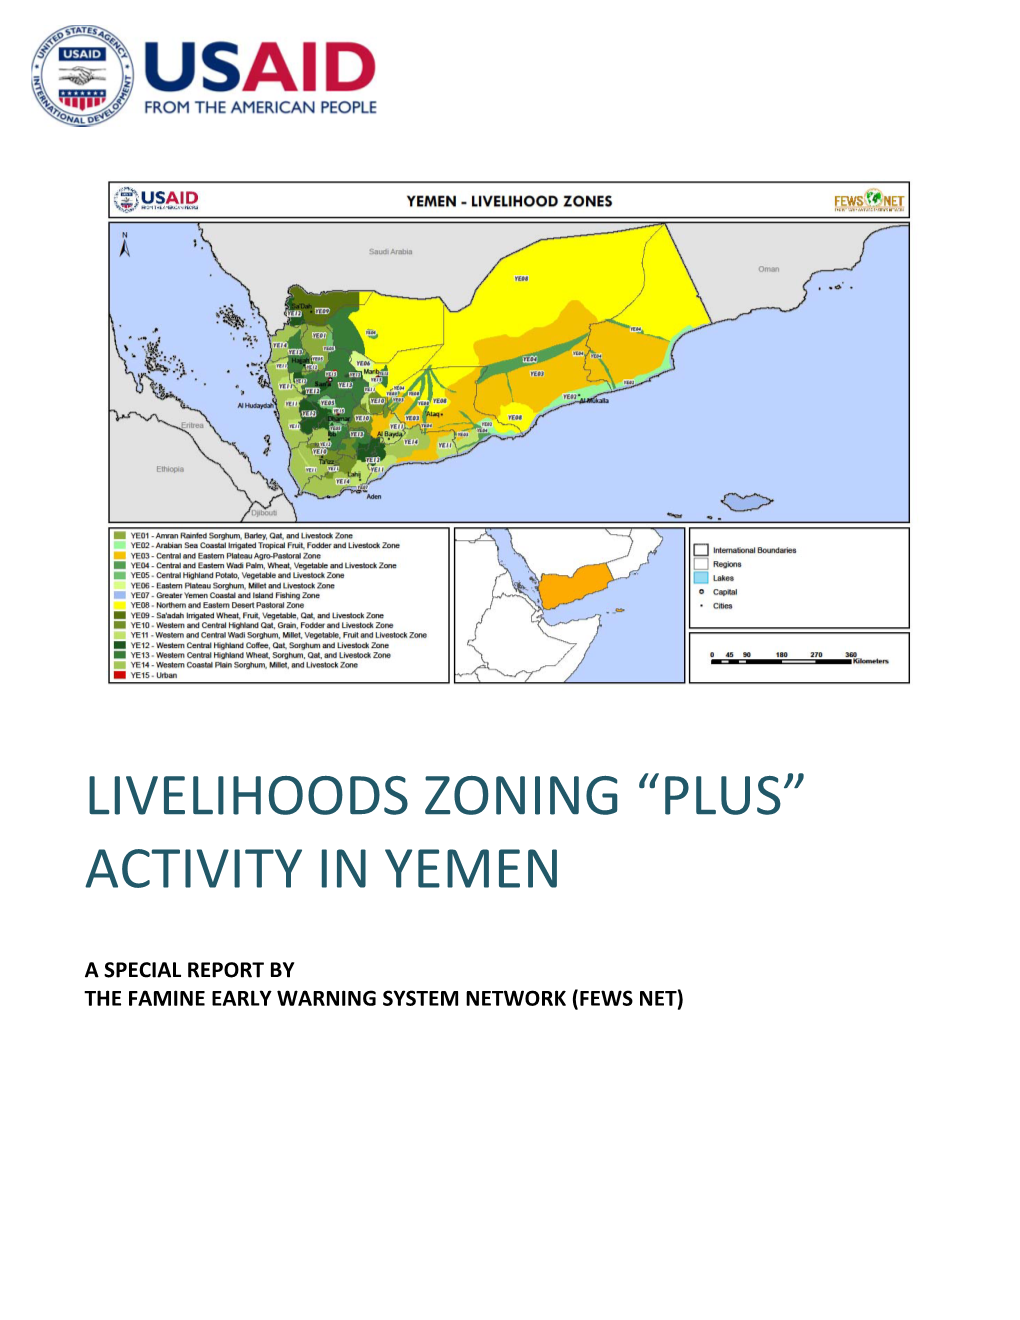 Livelihoods Zoning “Plus” Activity in Yemen